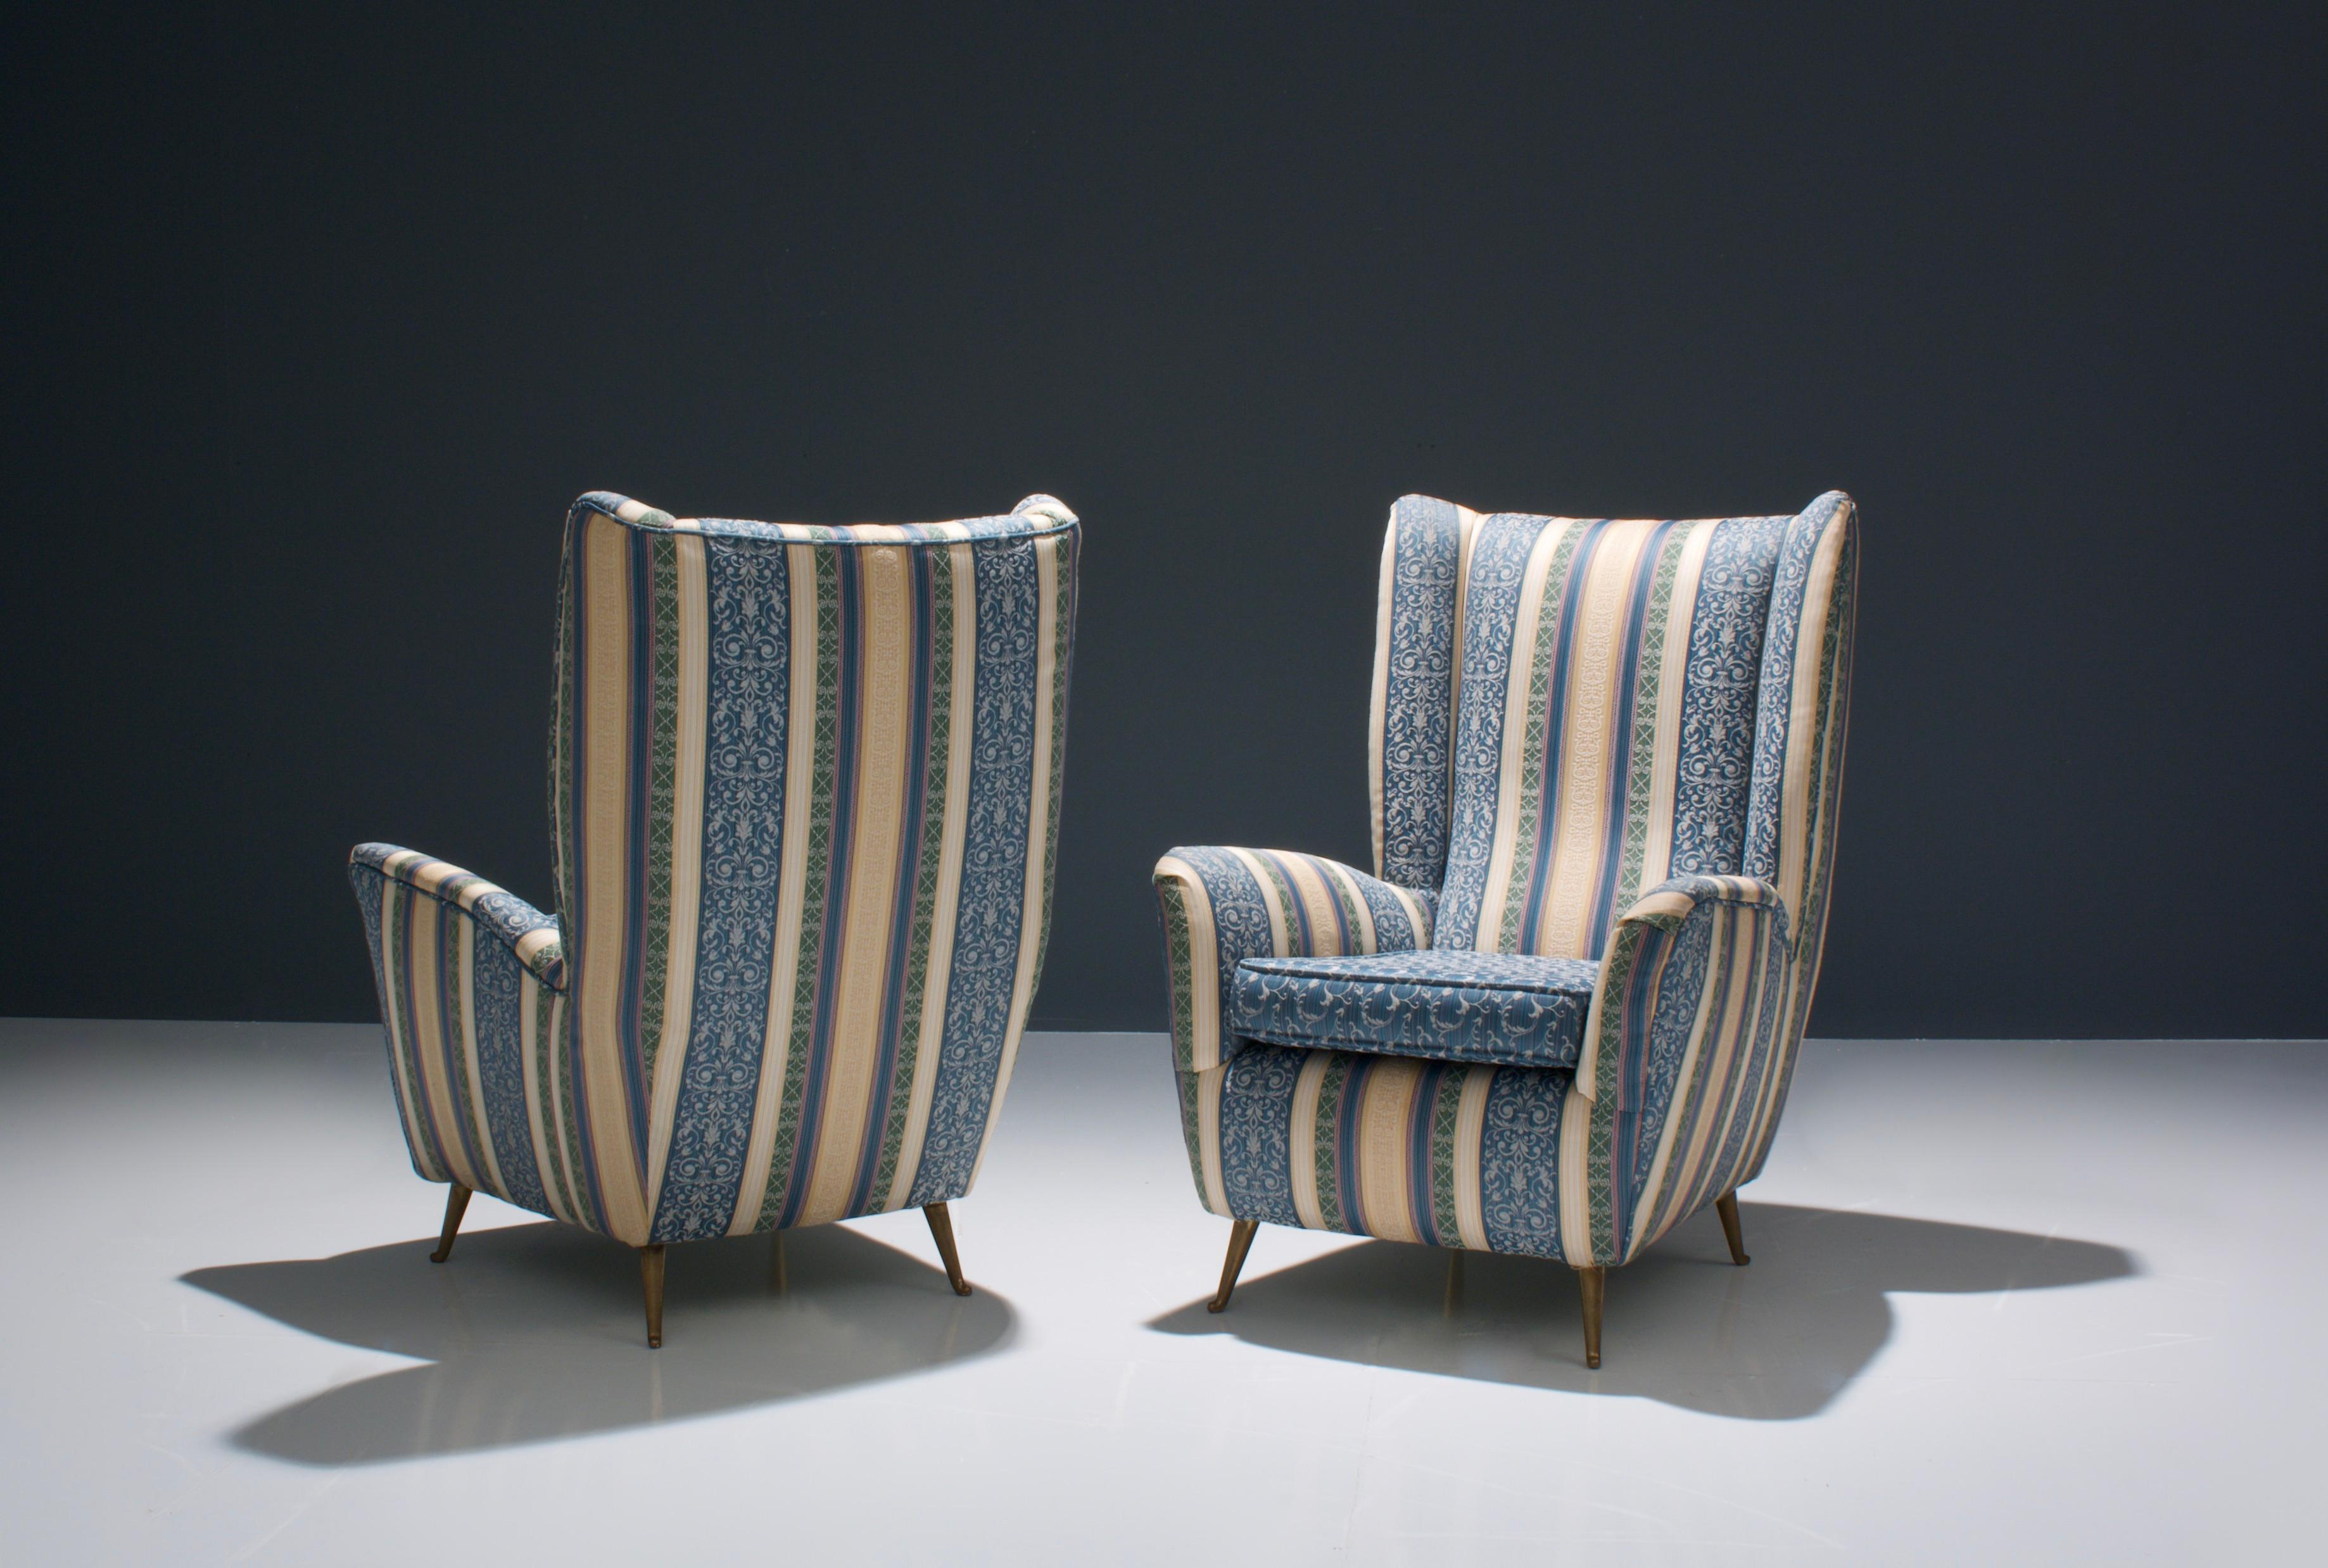 Une paire de chaises longues italiennes confortables, chaleureuses et colorées. Avec leurs formes rondes et leurs coussins doux et propres, ils invitent vraiment à s'asseoir et à se détendre. Vous vous sentirez englobé par la forme du fauteuil, ce